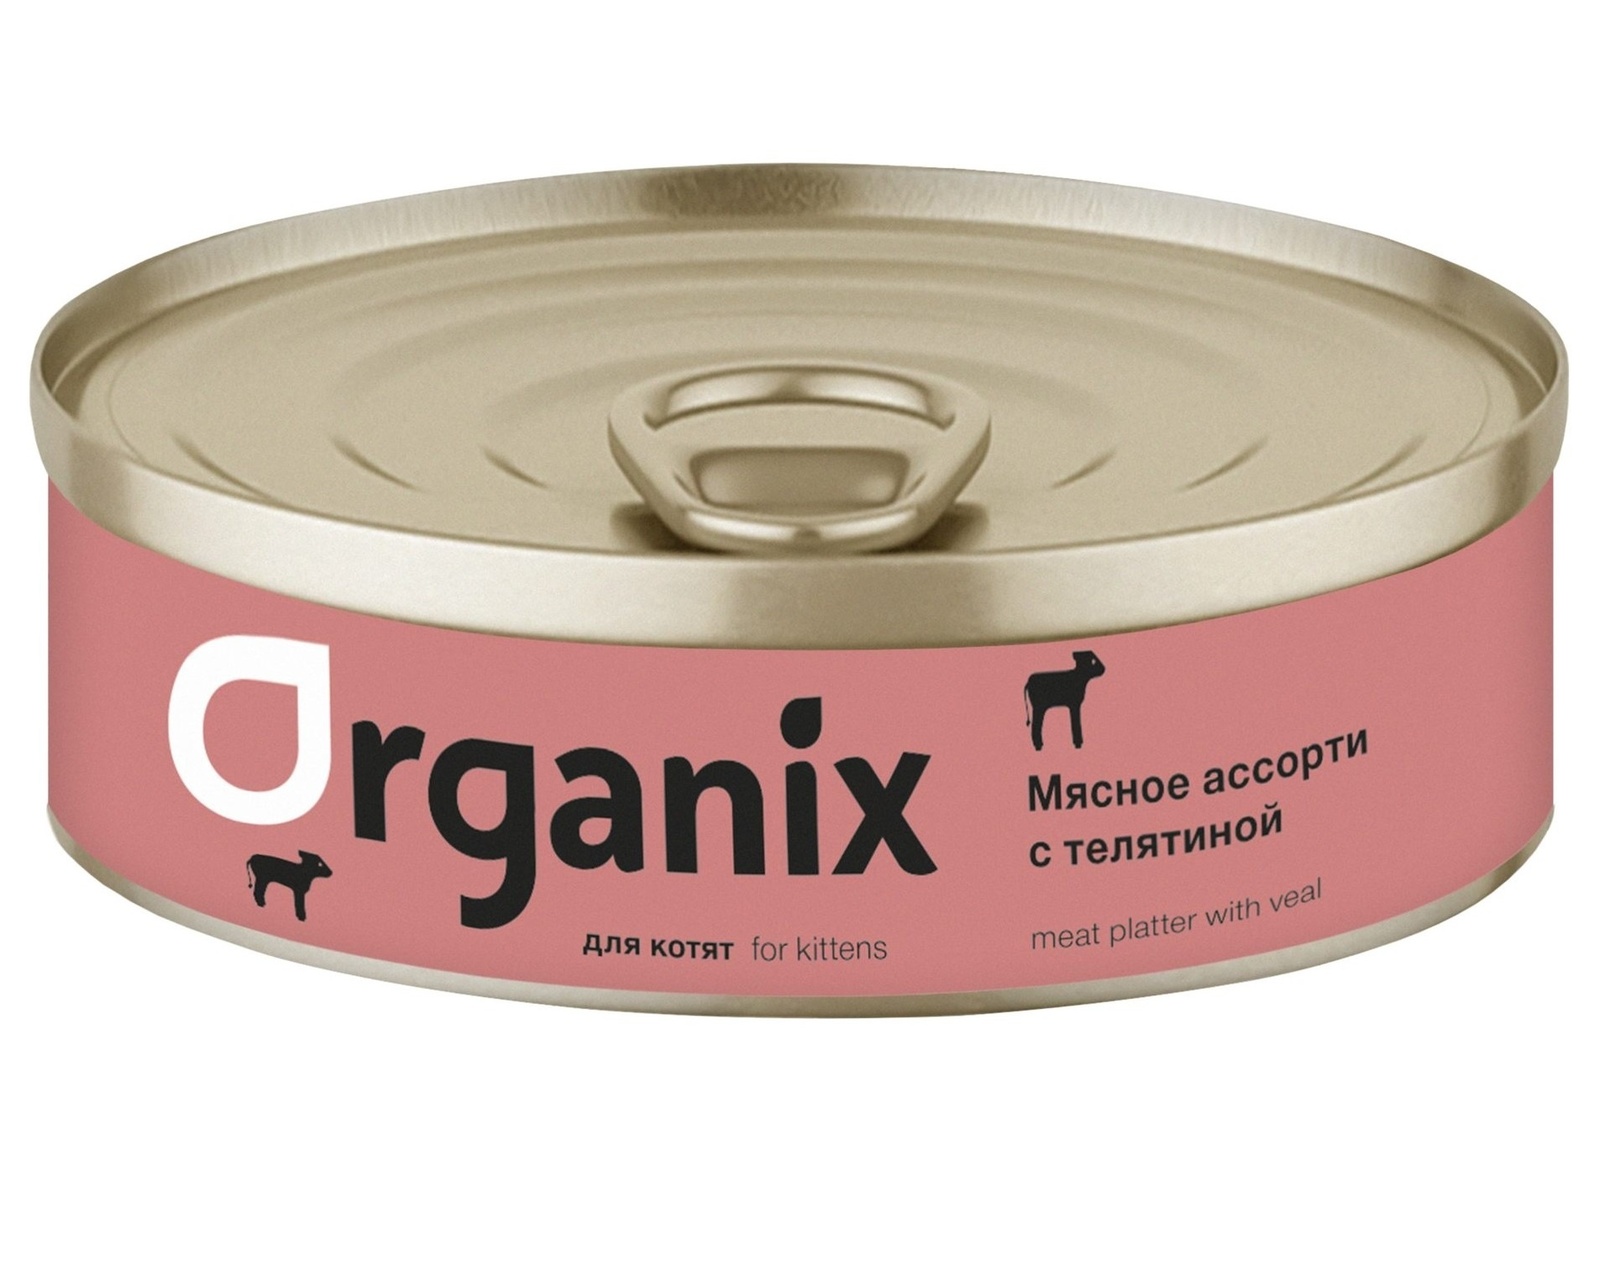 Organix консервы Organix консервы для котят Мясное ассорти с телятиной (100 г) organix консервы organix консервы с телятиной для кошек 100 г